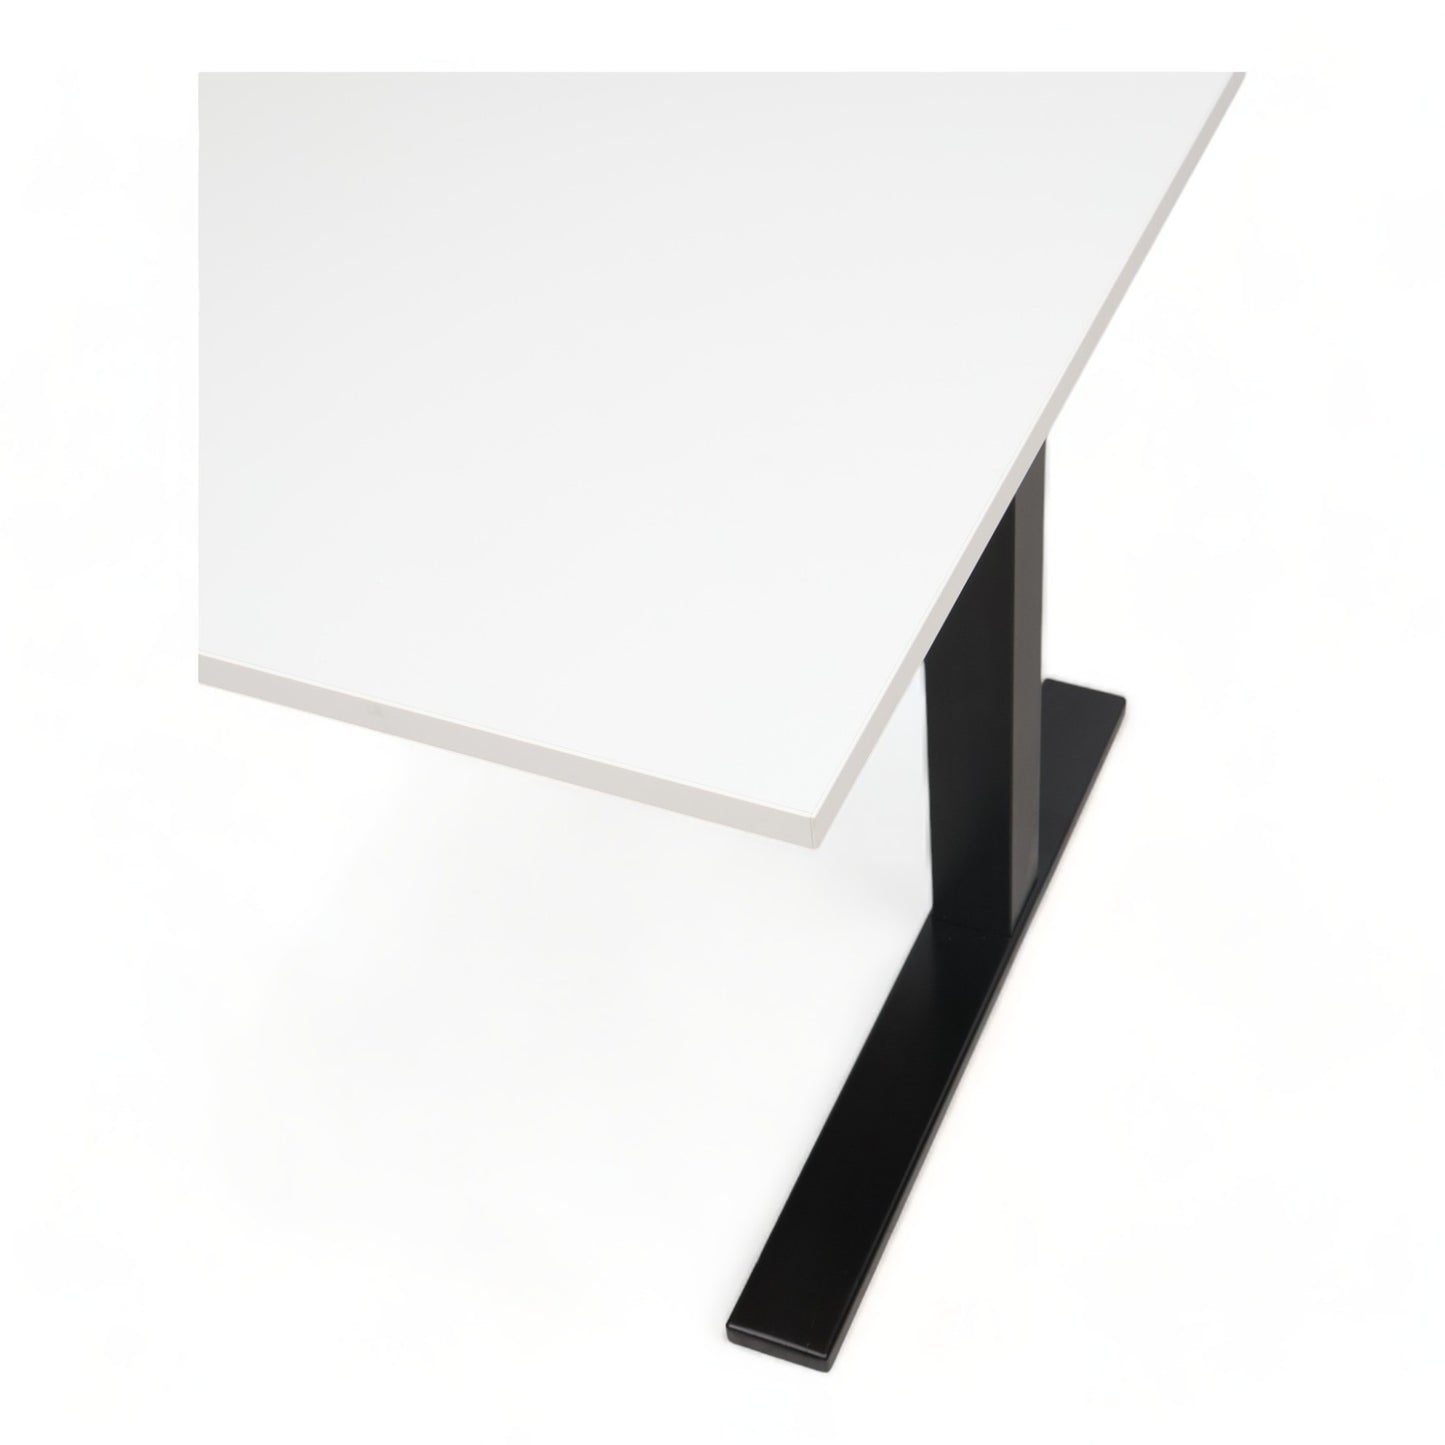 Nyrenset | 140x80cm Astro toppmodell elektrisk hev/senk skrivebord, med Tellus bordplate (140x80)